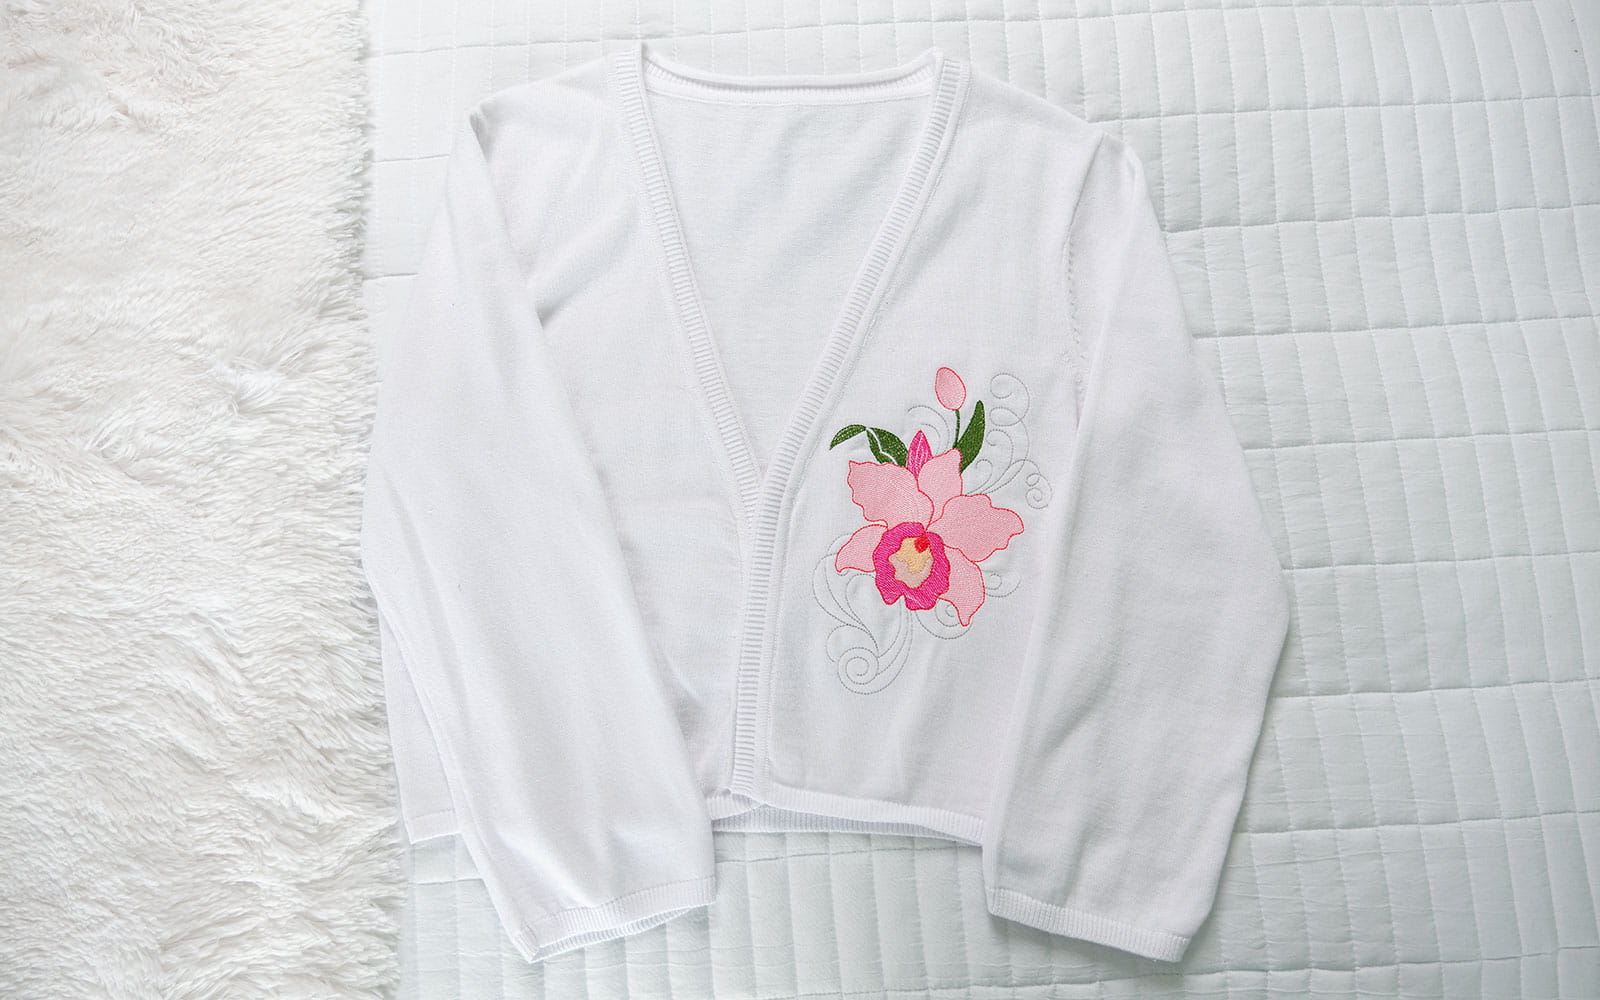 wit vest met roze orchideeborduurwerk op borst plat op wit bed